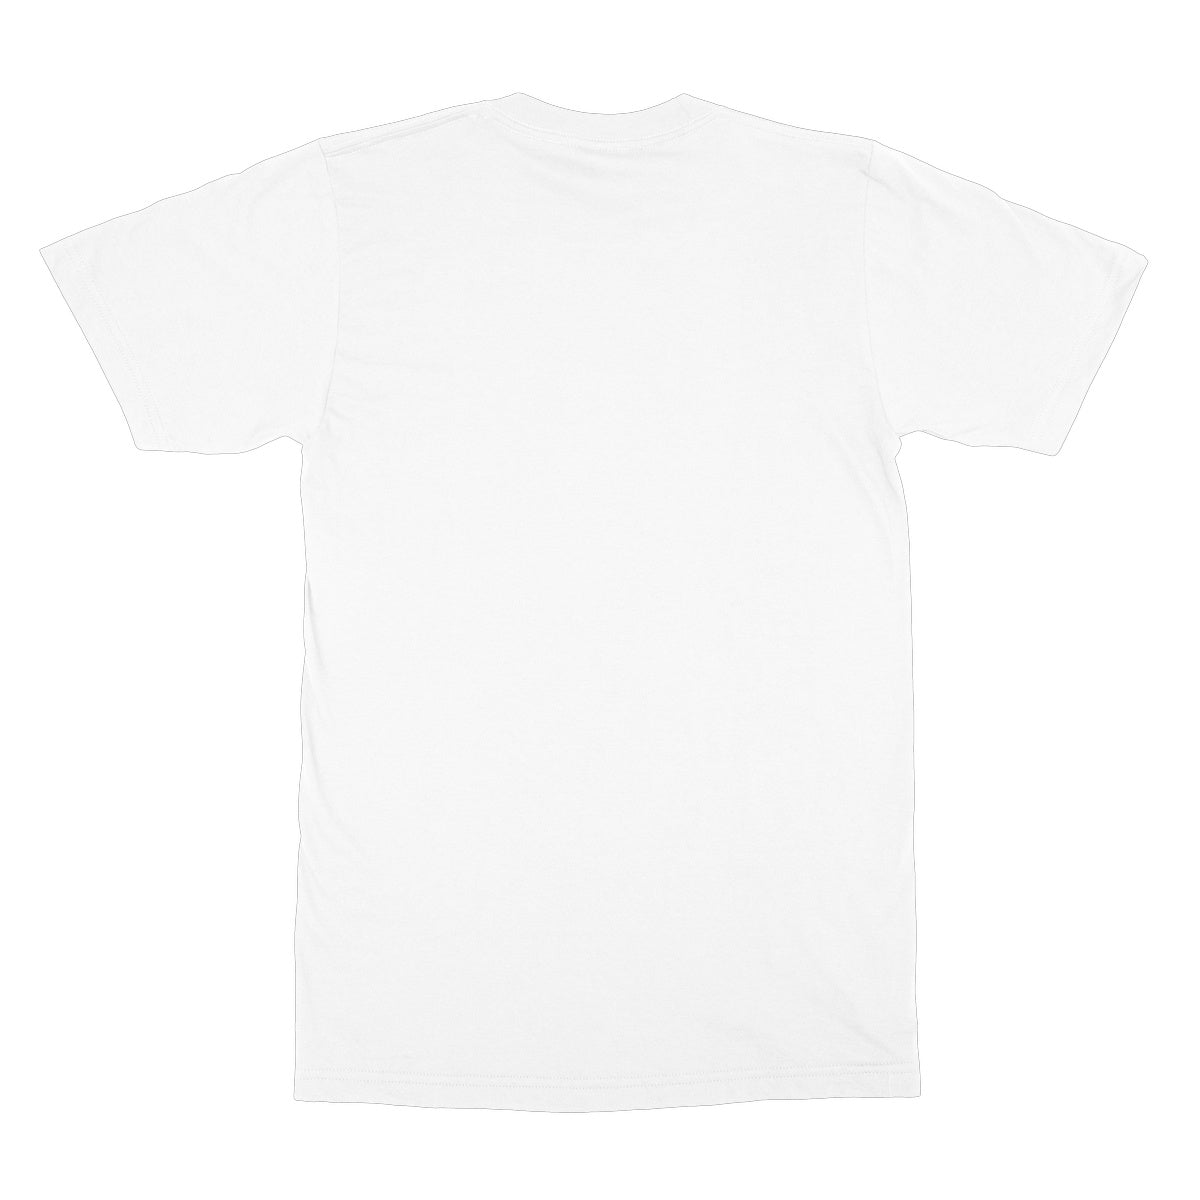 Prometheus Illustrated Tee Softstyle T-Shirt